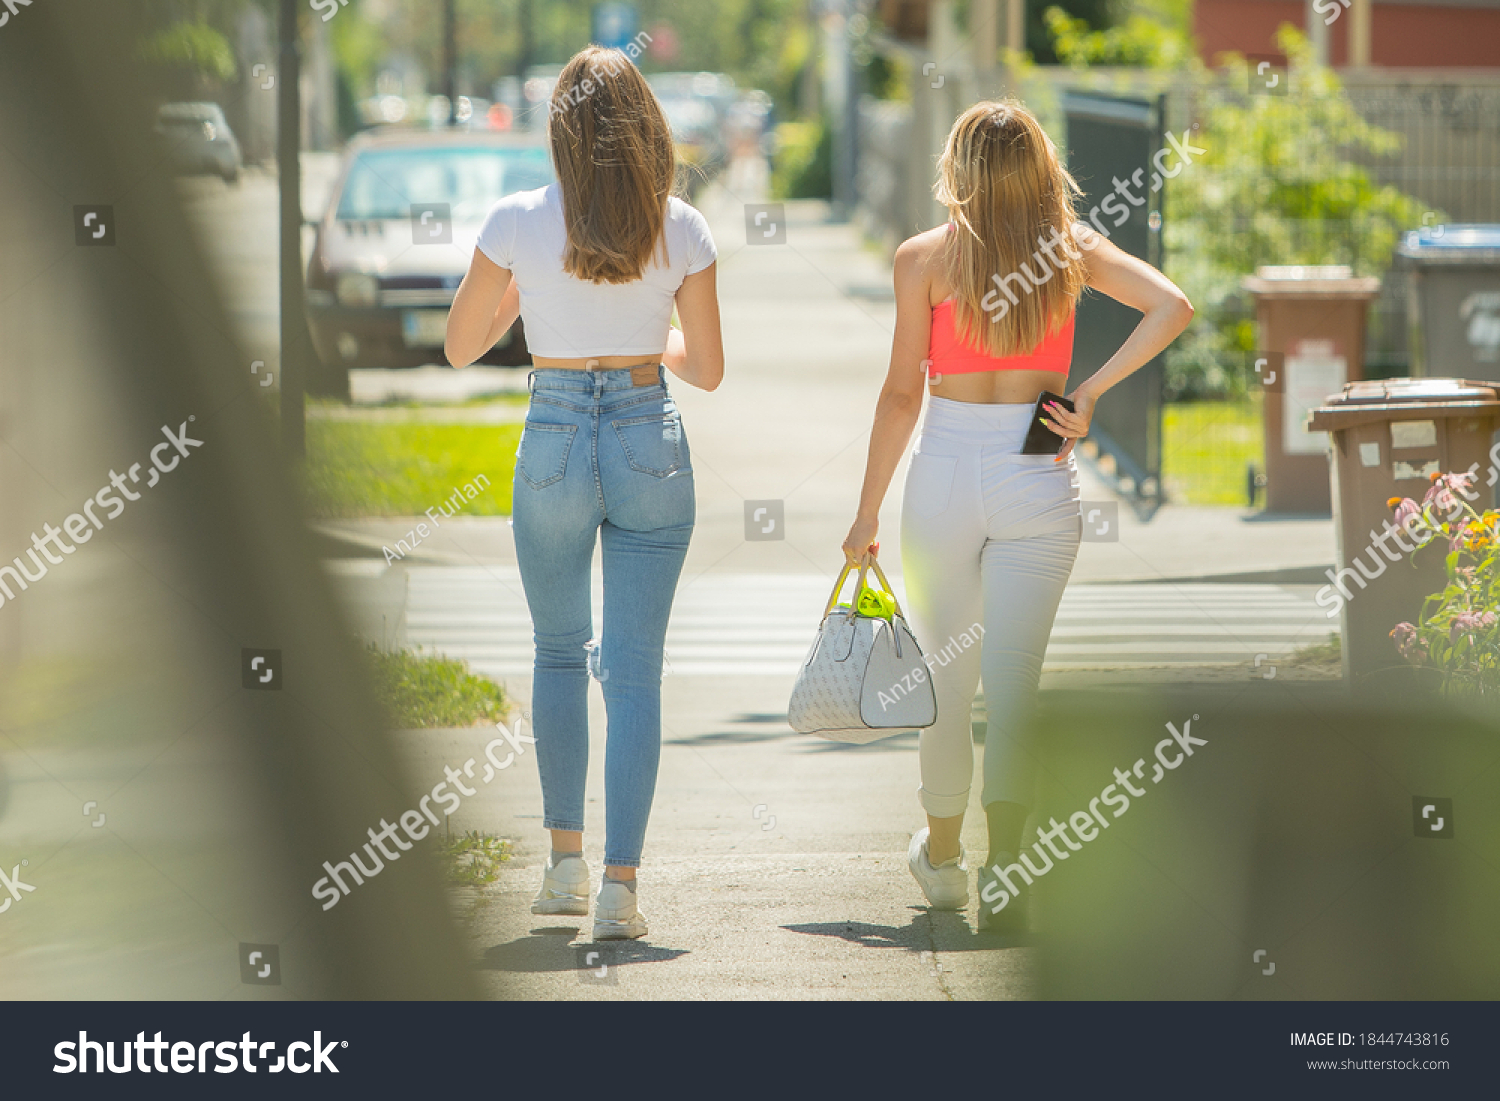 Ass walking